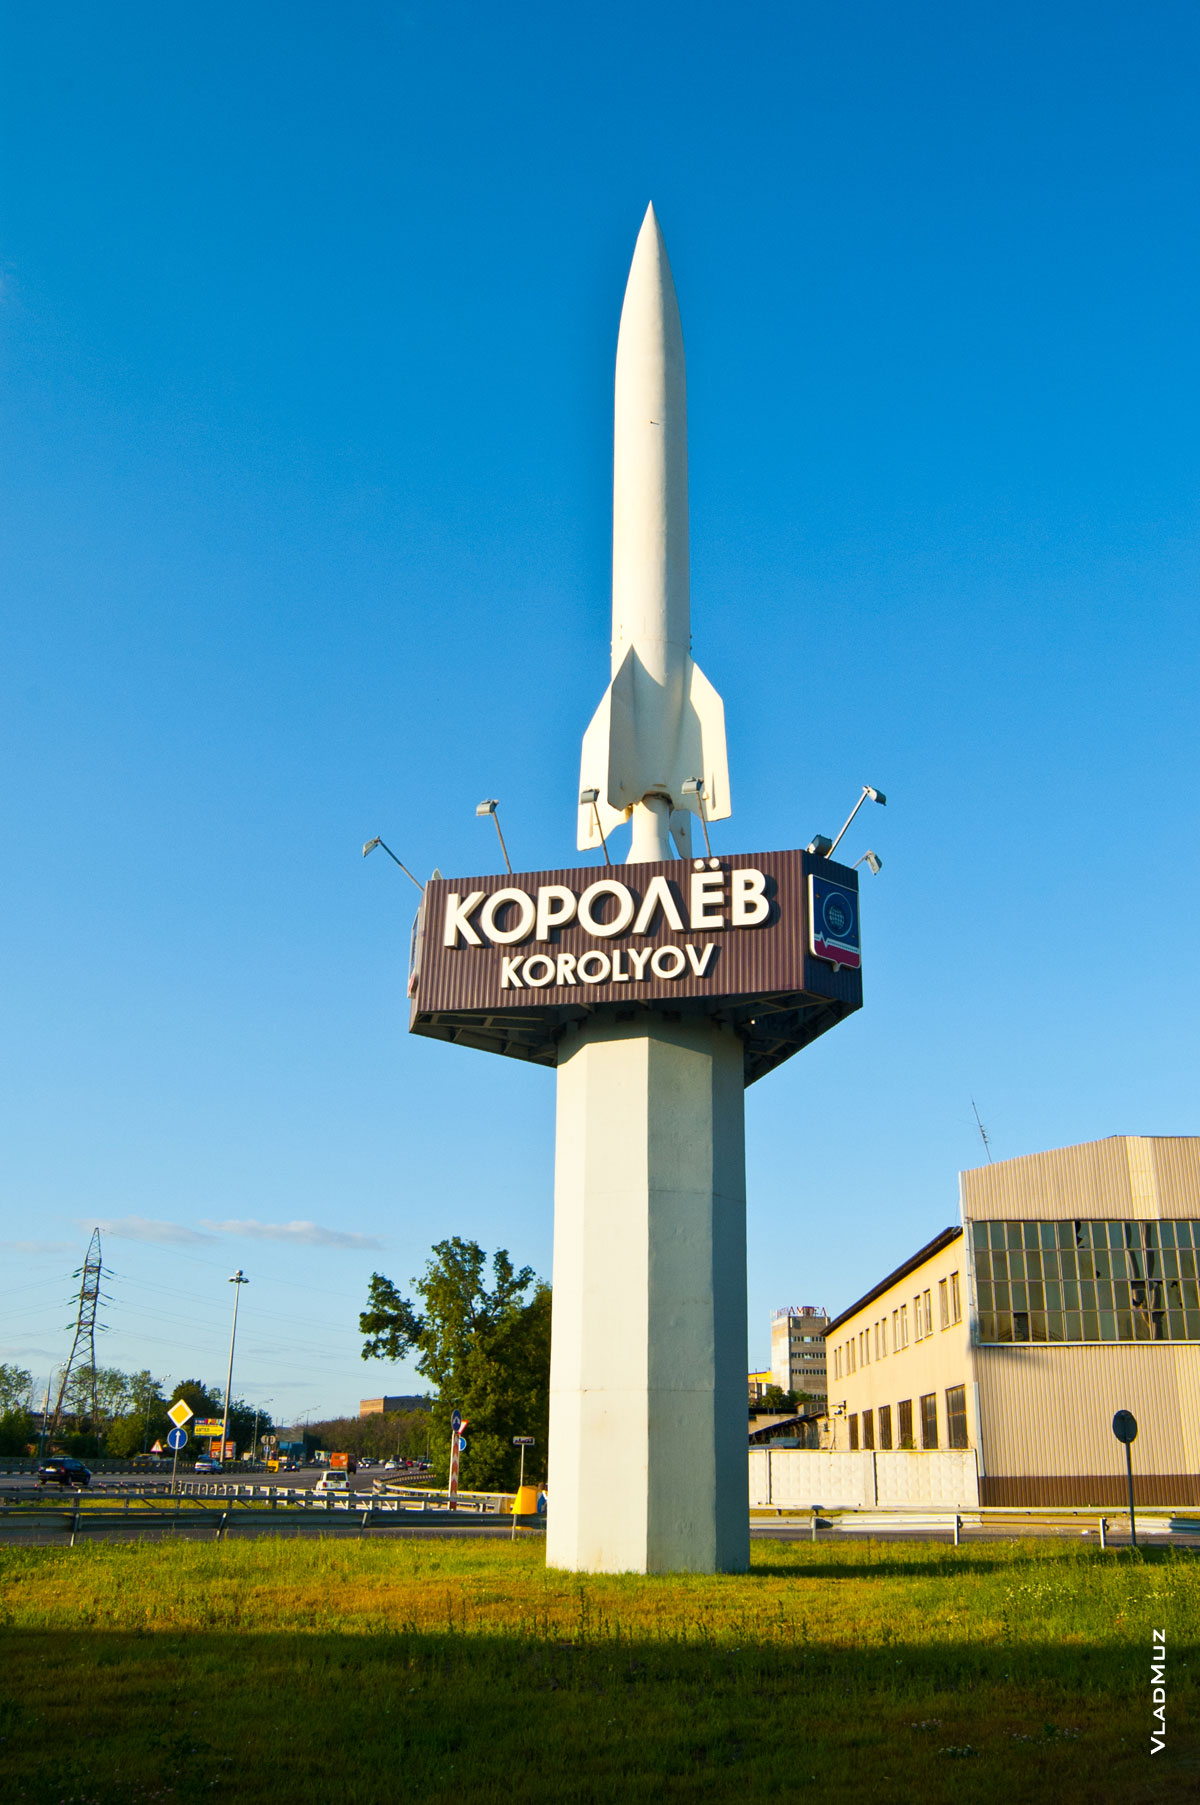 Фото символа г. Королёва — ракеты, на въезде в город с Ярославского шоссе